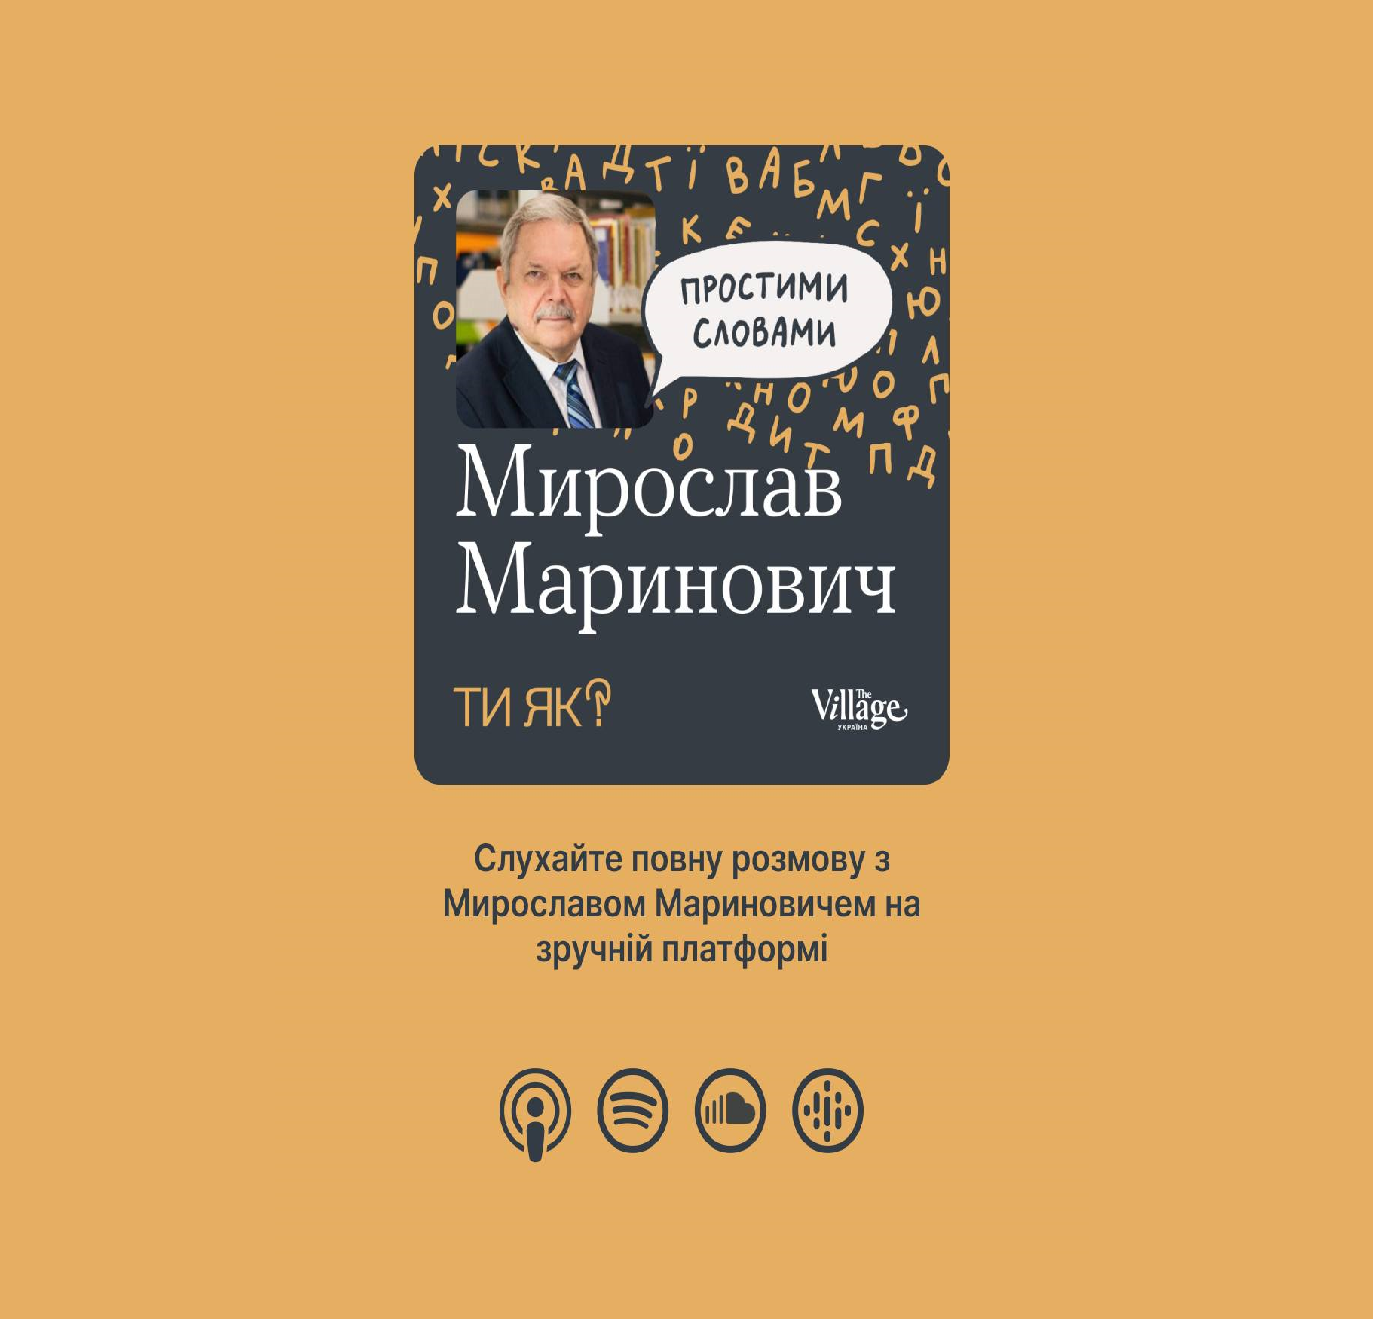 Обкладинка до подкасту «Простими словами» з Мирославом Мариновичем 